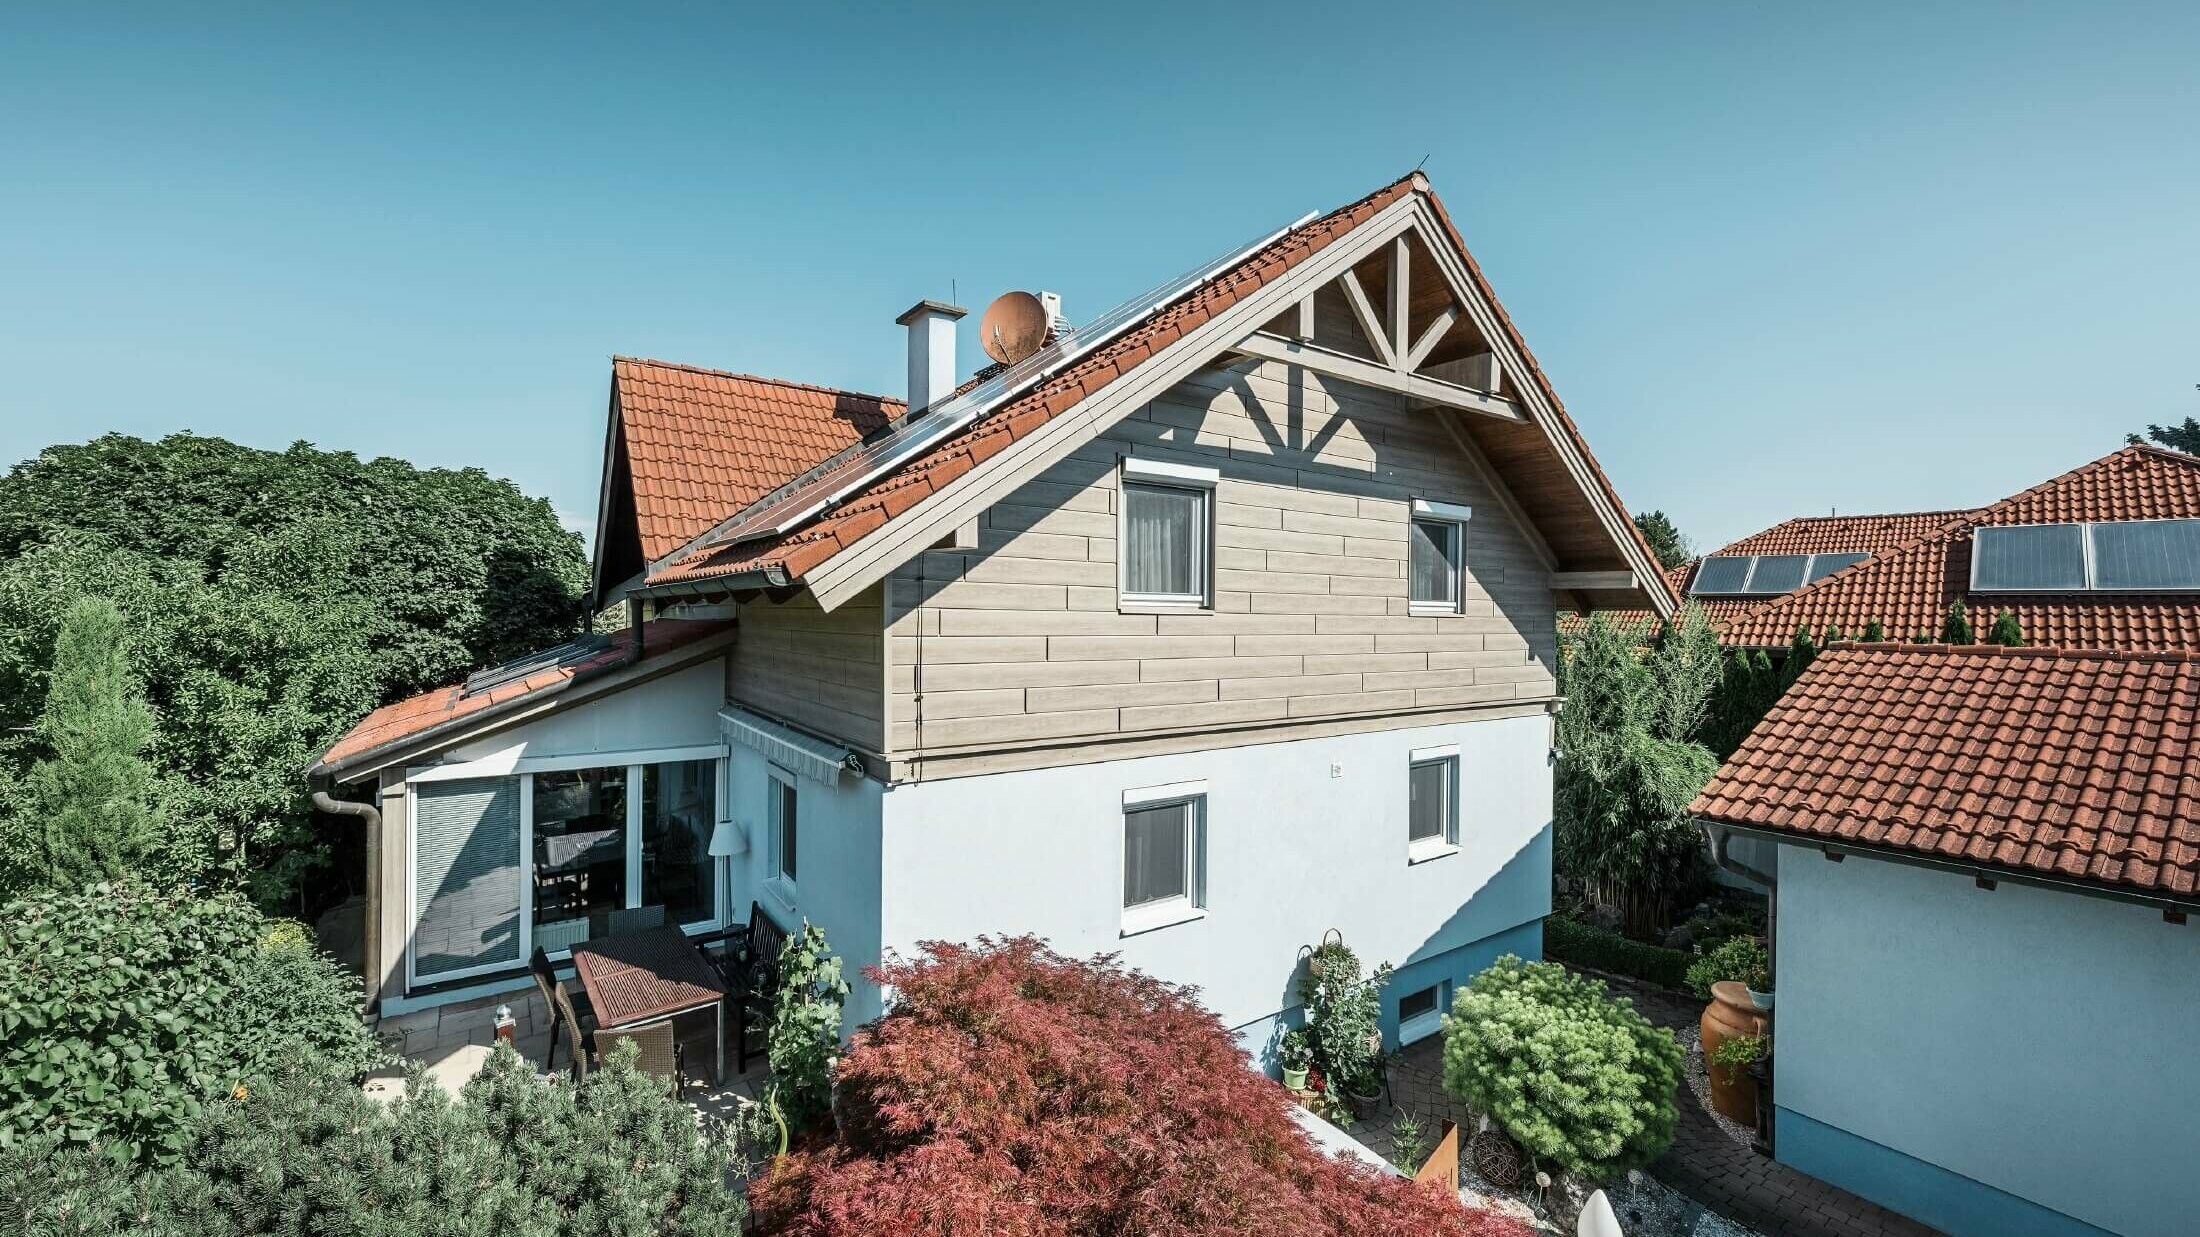 Facaden på et enfamiliehus, hvor øverste etage er beklædt med Sidings i trælook i farven beige/grå eg